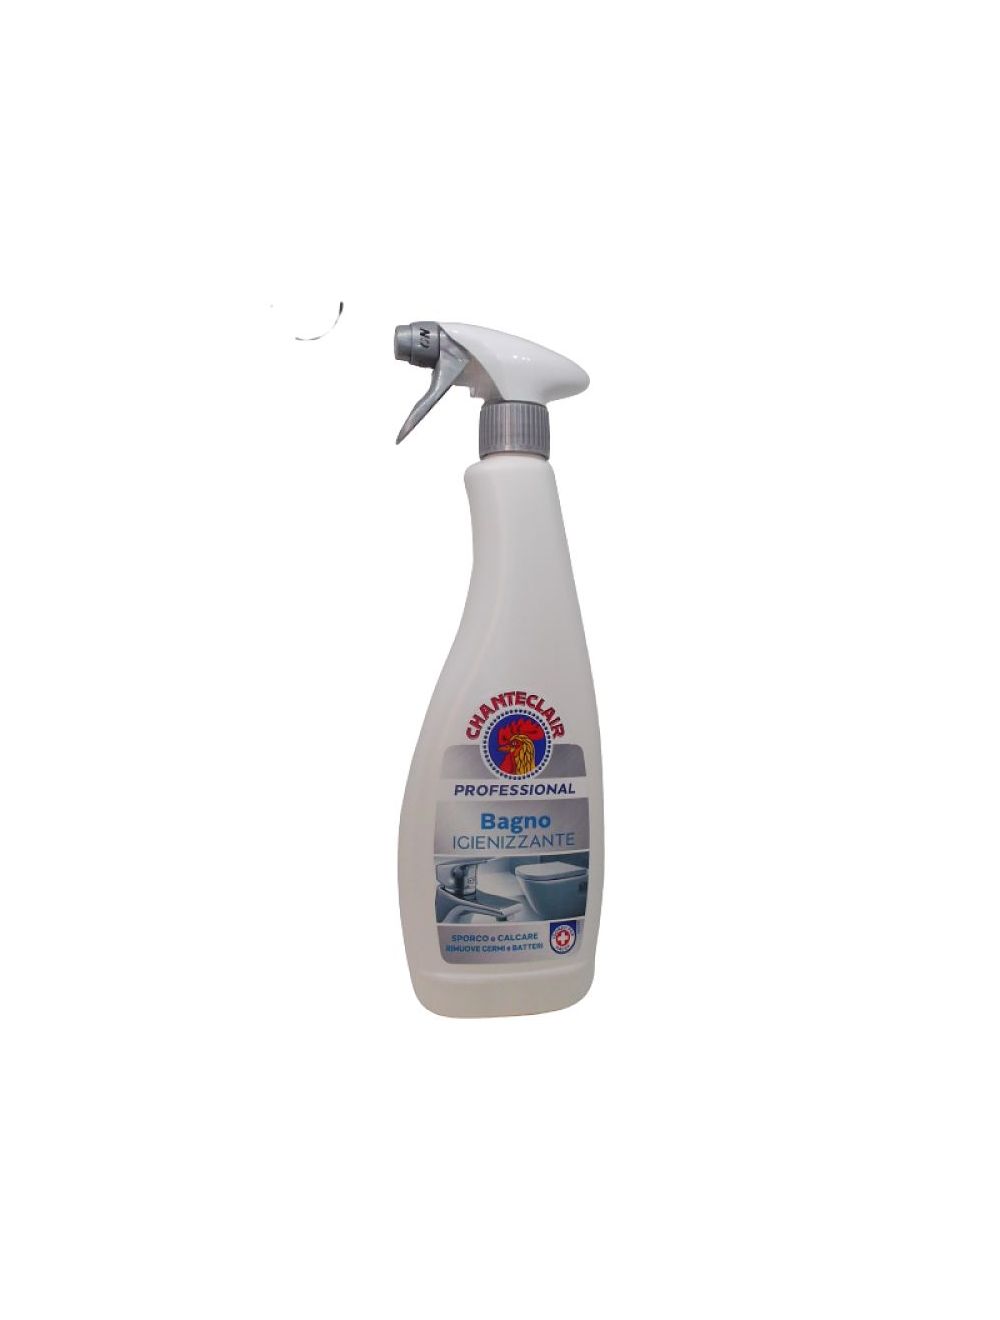 Detergente igienizzante spray per bagno Chanteclair - Agraria Comand